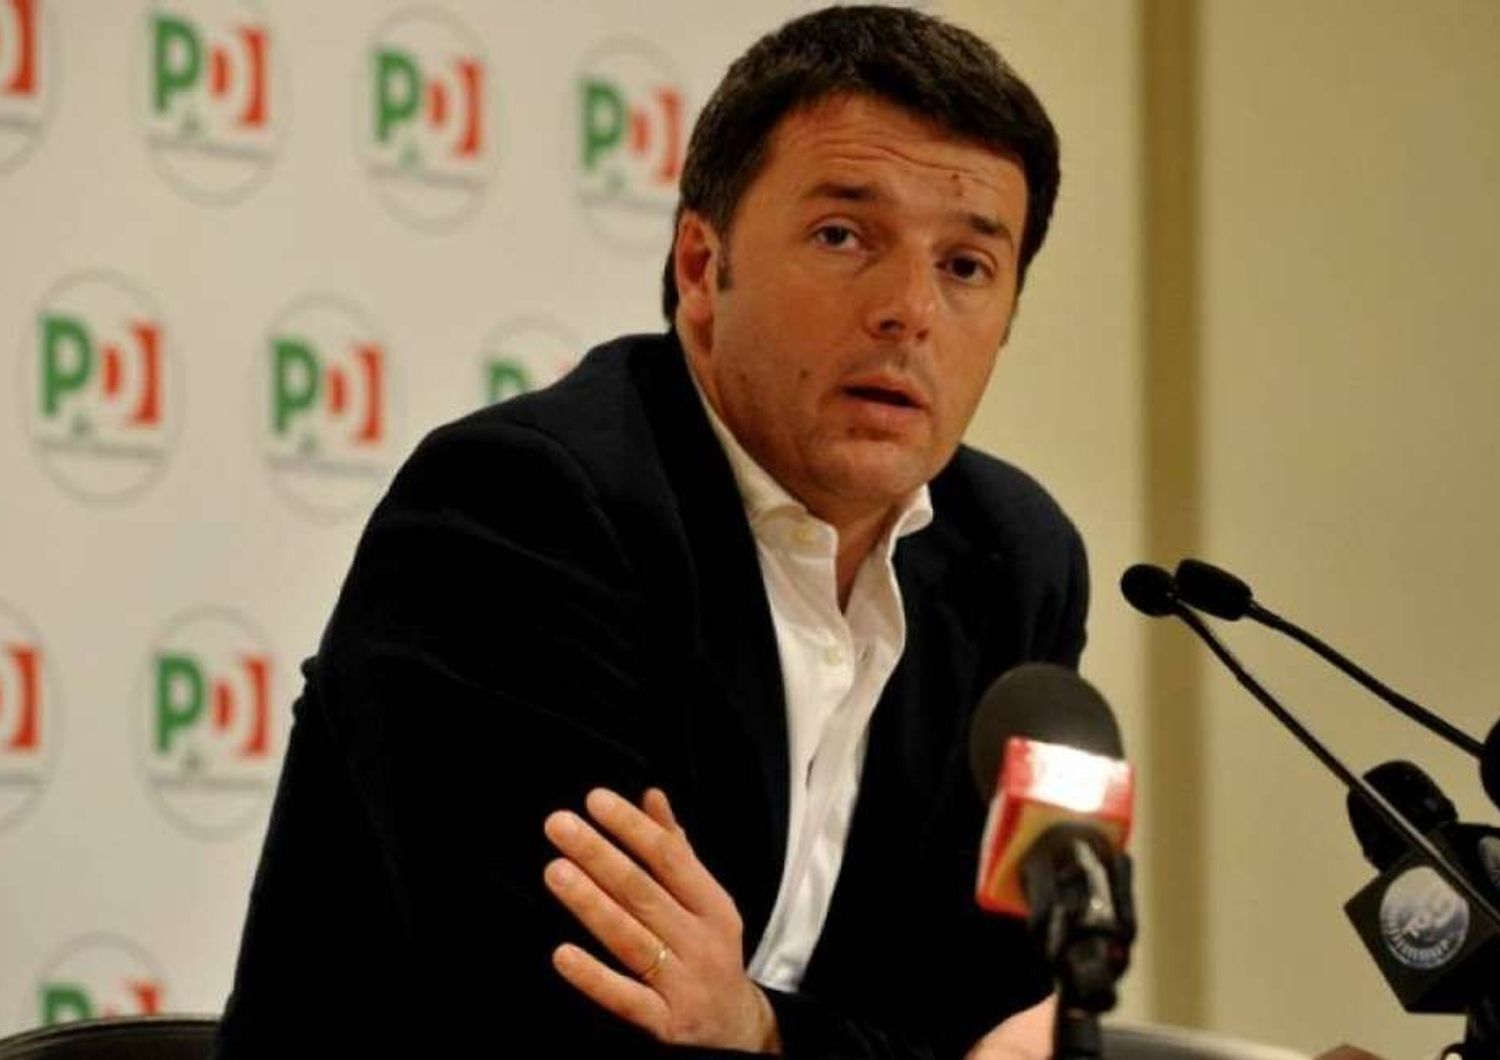 Lavoro: resa dei conti nel Pd Renzi "via i contratti precari"